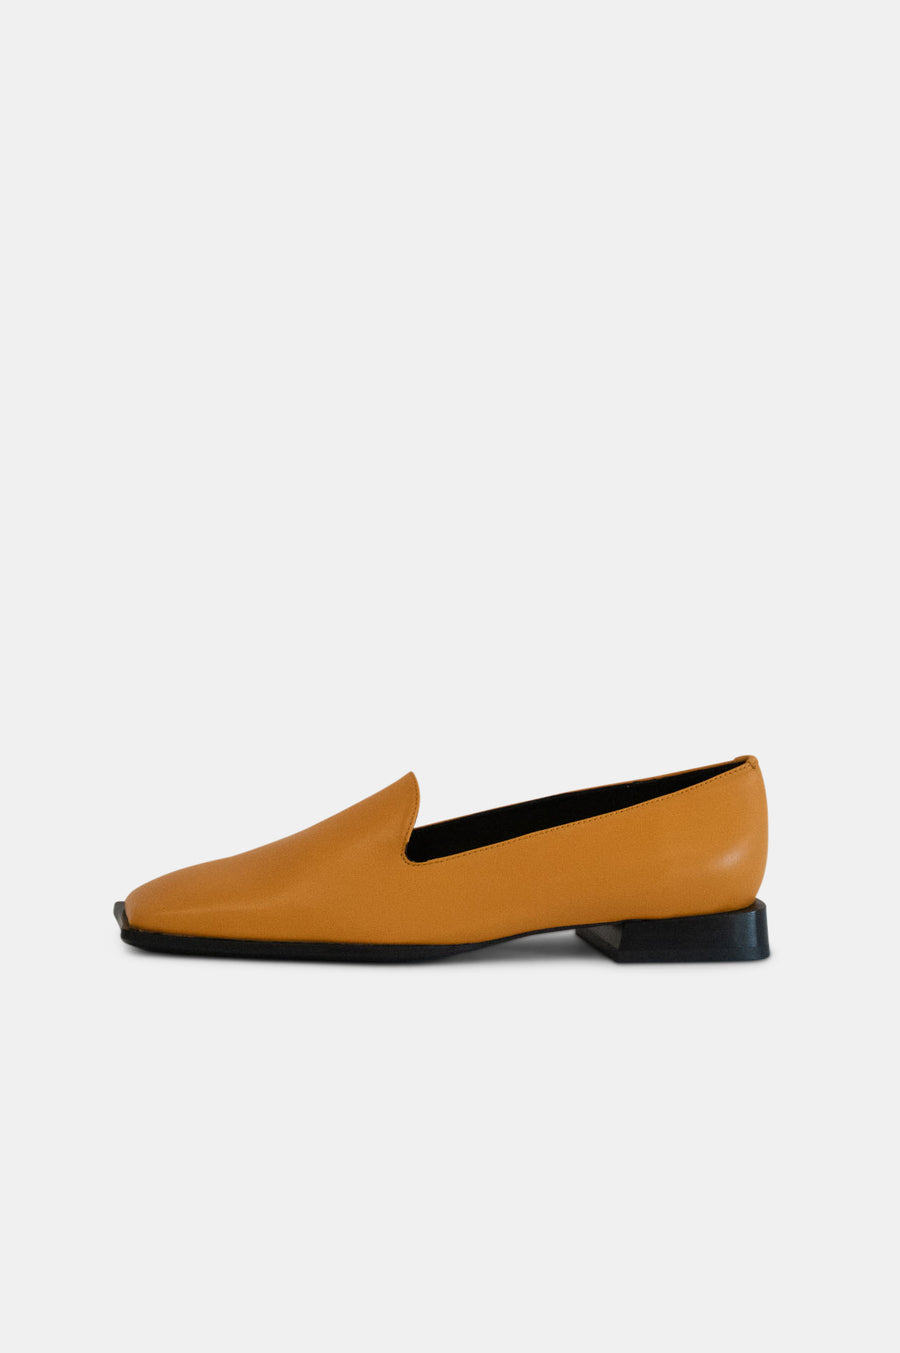 Slip-On Loafer Burnt Orange - Sample Size 37